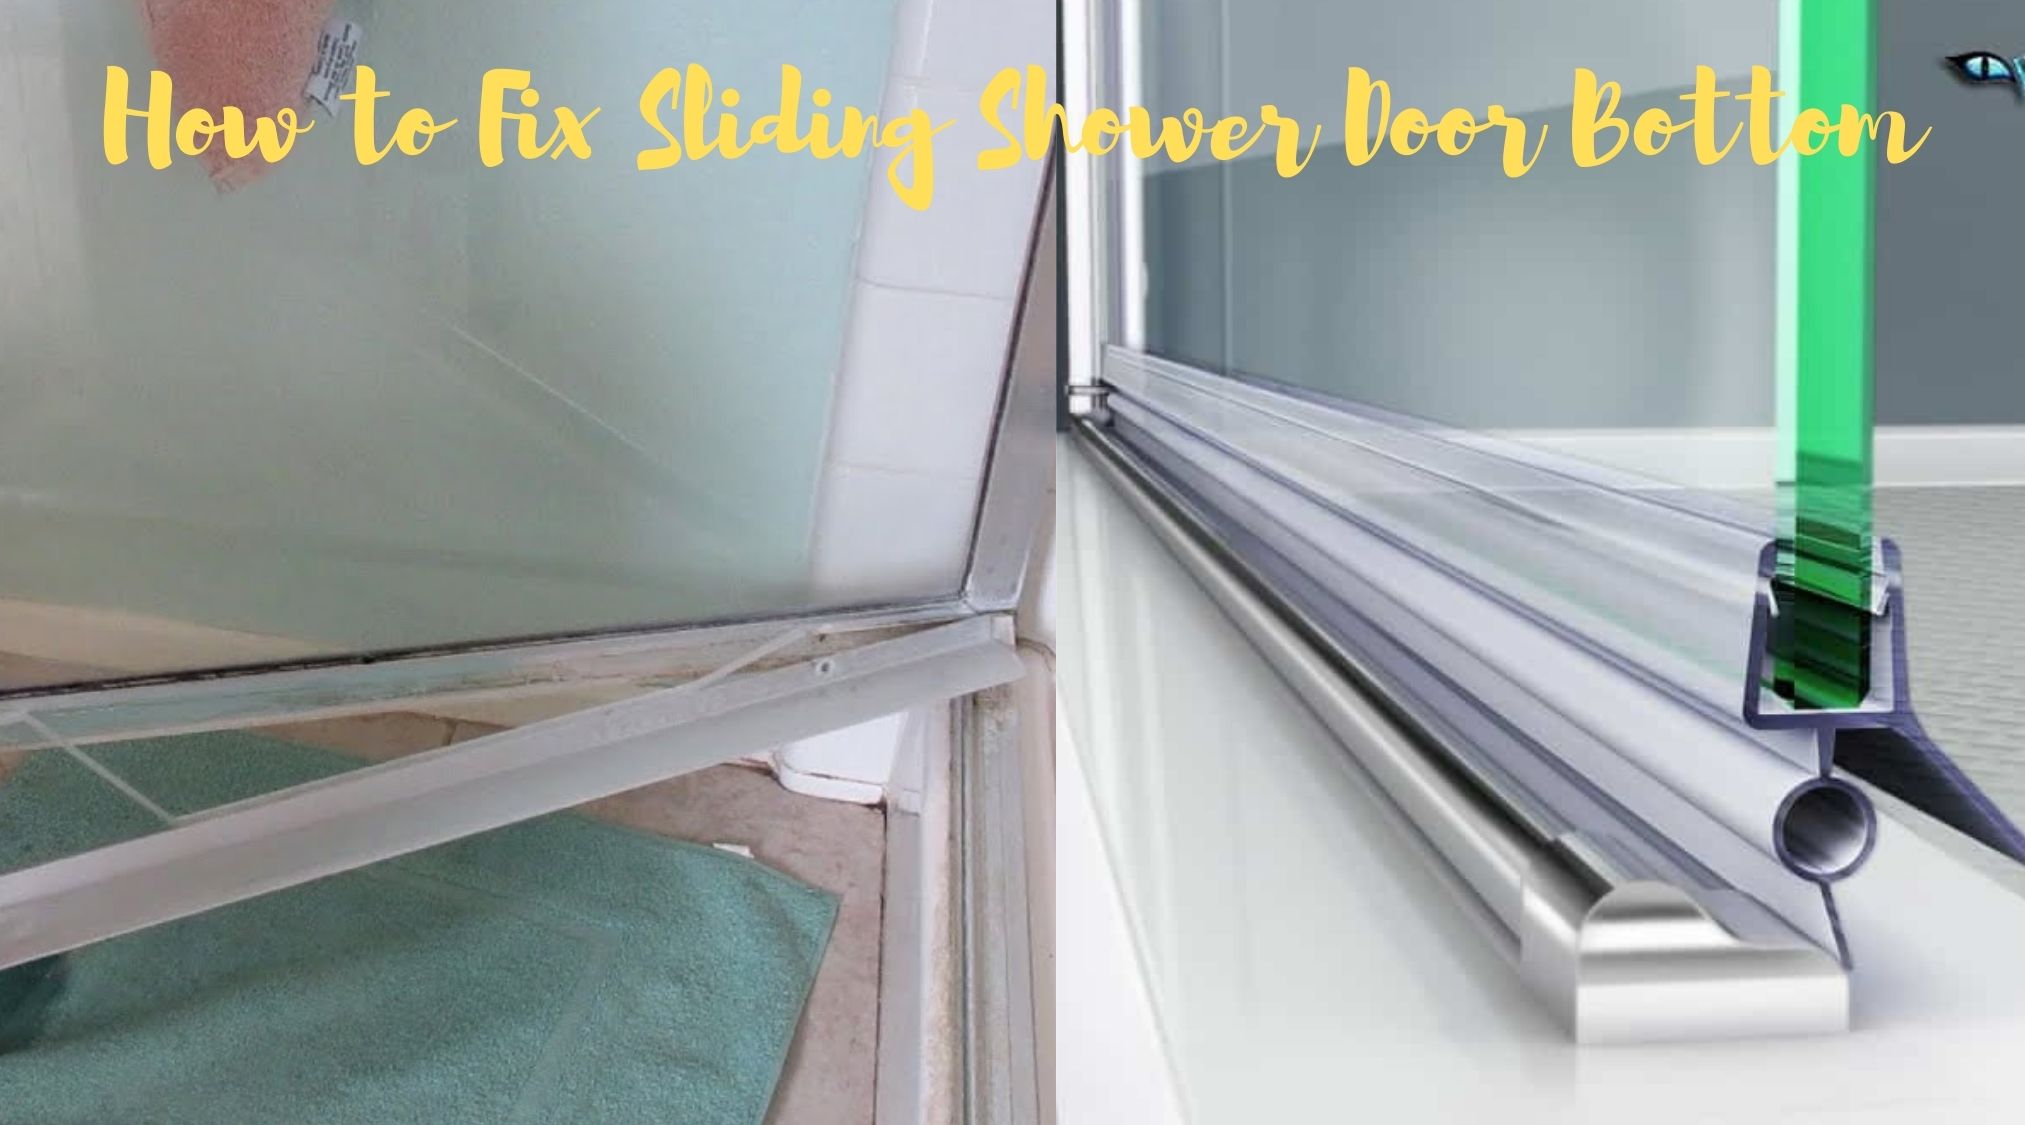 How to Fix Sliding Shower Door Bottom